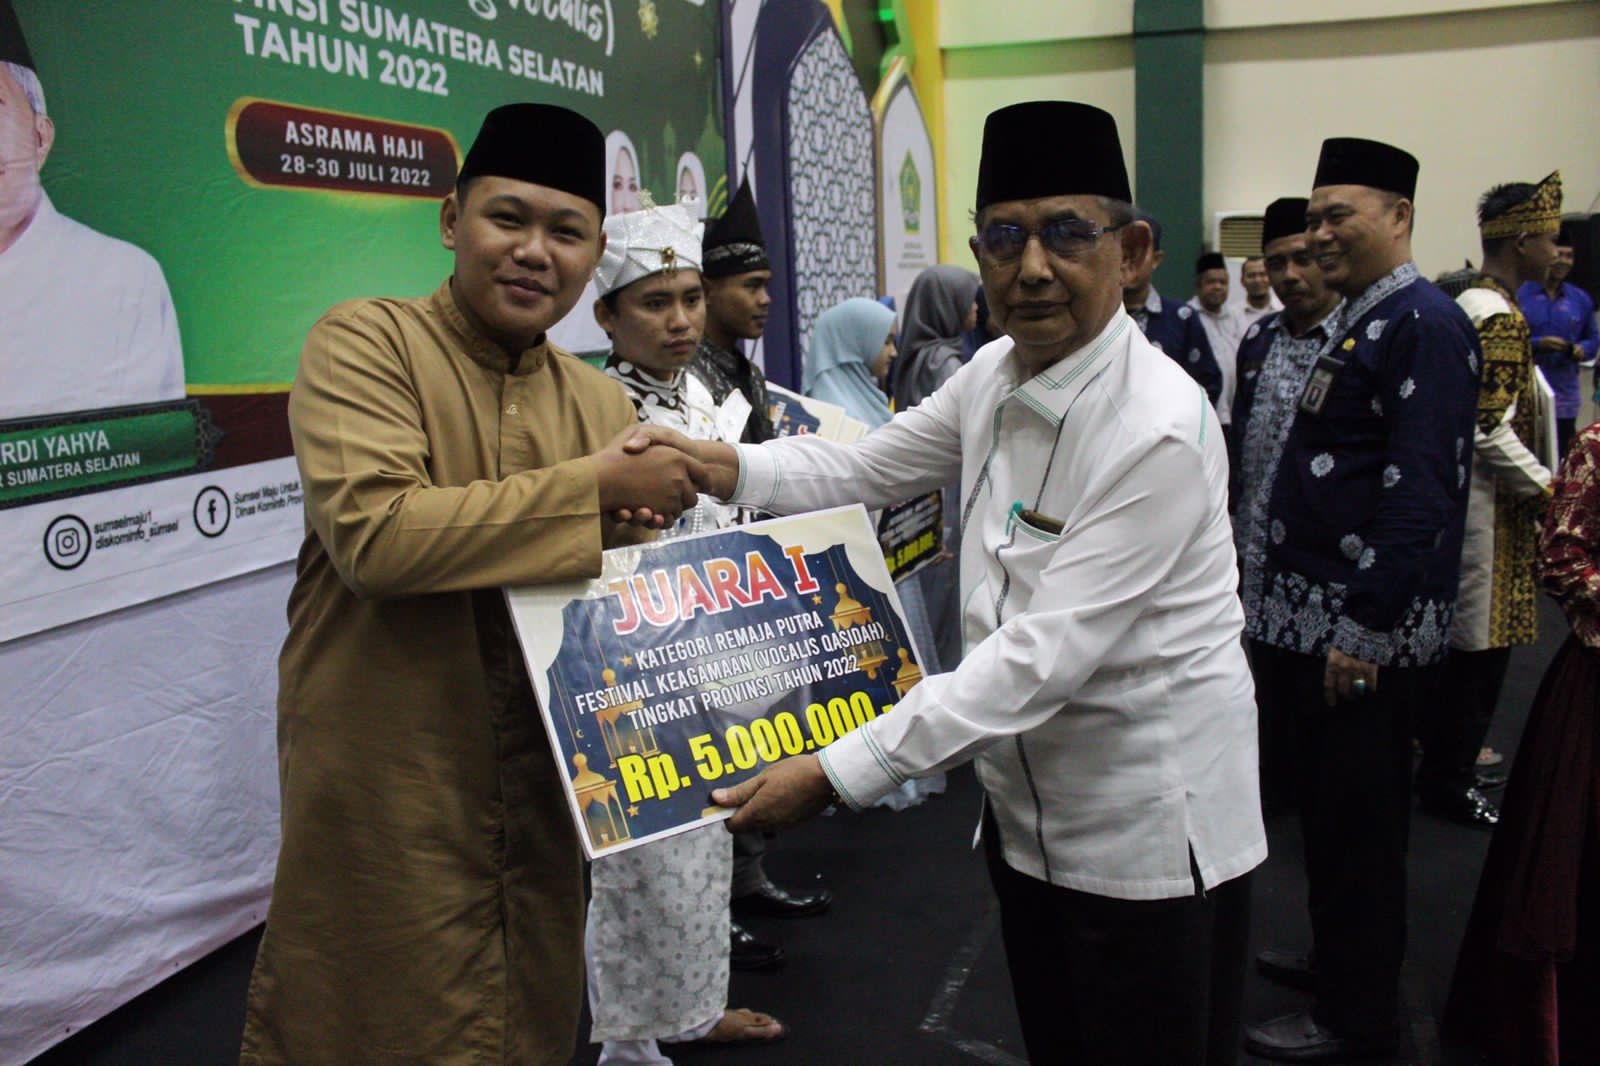 daffa juara 1 kategori remaja putra Festival Keagamaan (Vocalis Qasidah) tingkat provinsi Sumatera Selatan Tahun 2022 dalam Festival Kegamaan Seni Qasidah (Bintang Vocalis). 